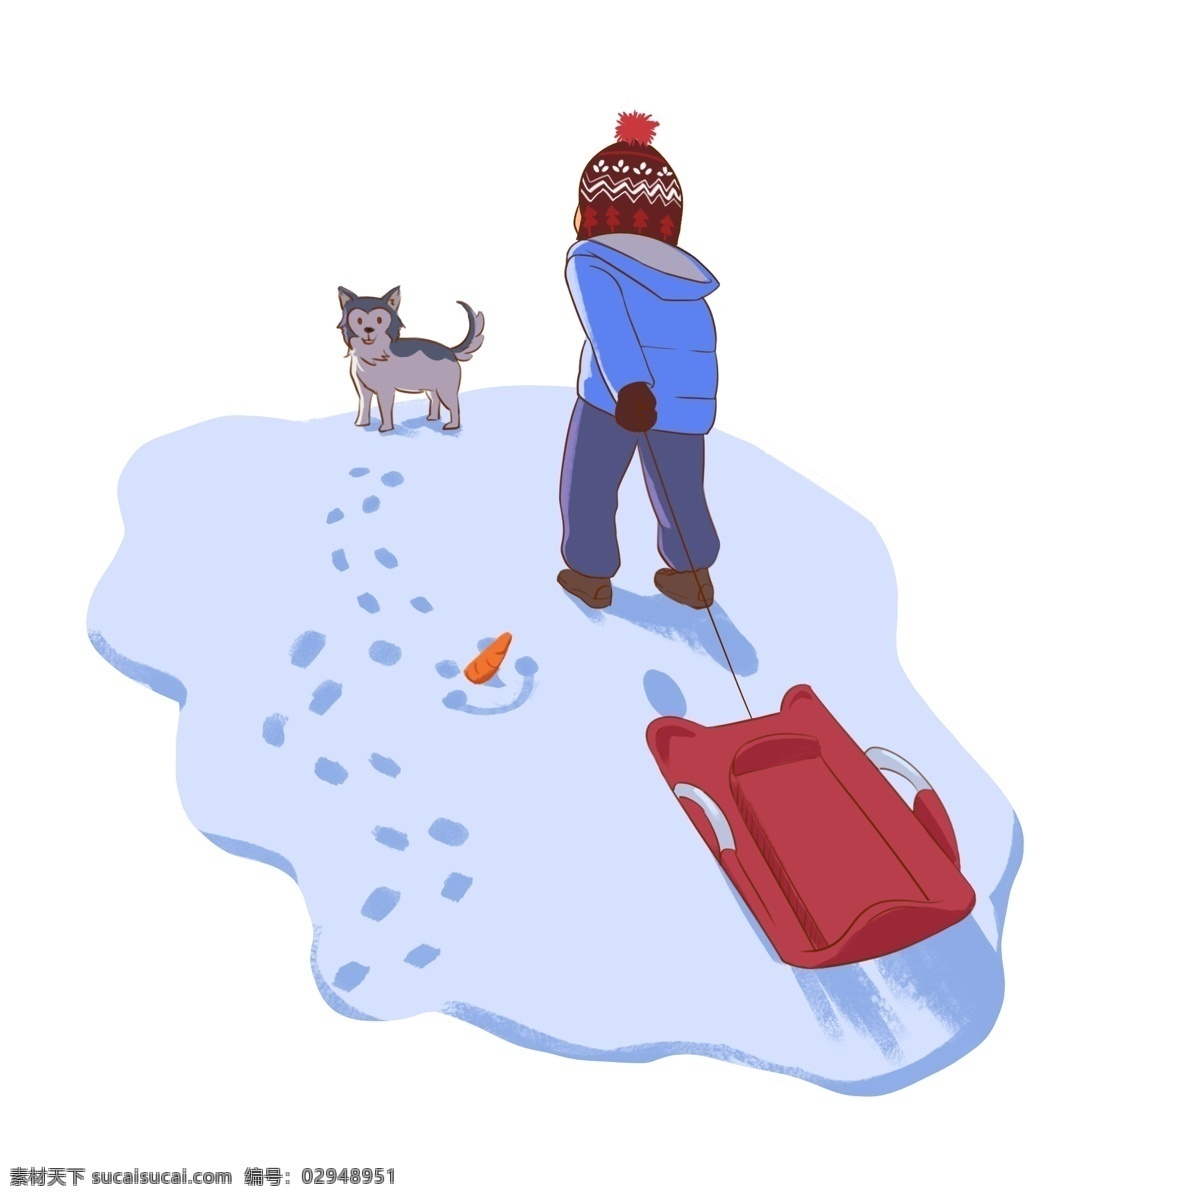 滑雪 插画 冬日 带 小狗 雪橇 去 脚印 插画冬日 哈士奇 帽子 羽绒服 手套 装饰 壁纸 小清新